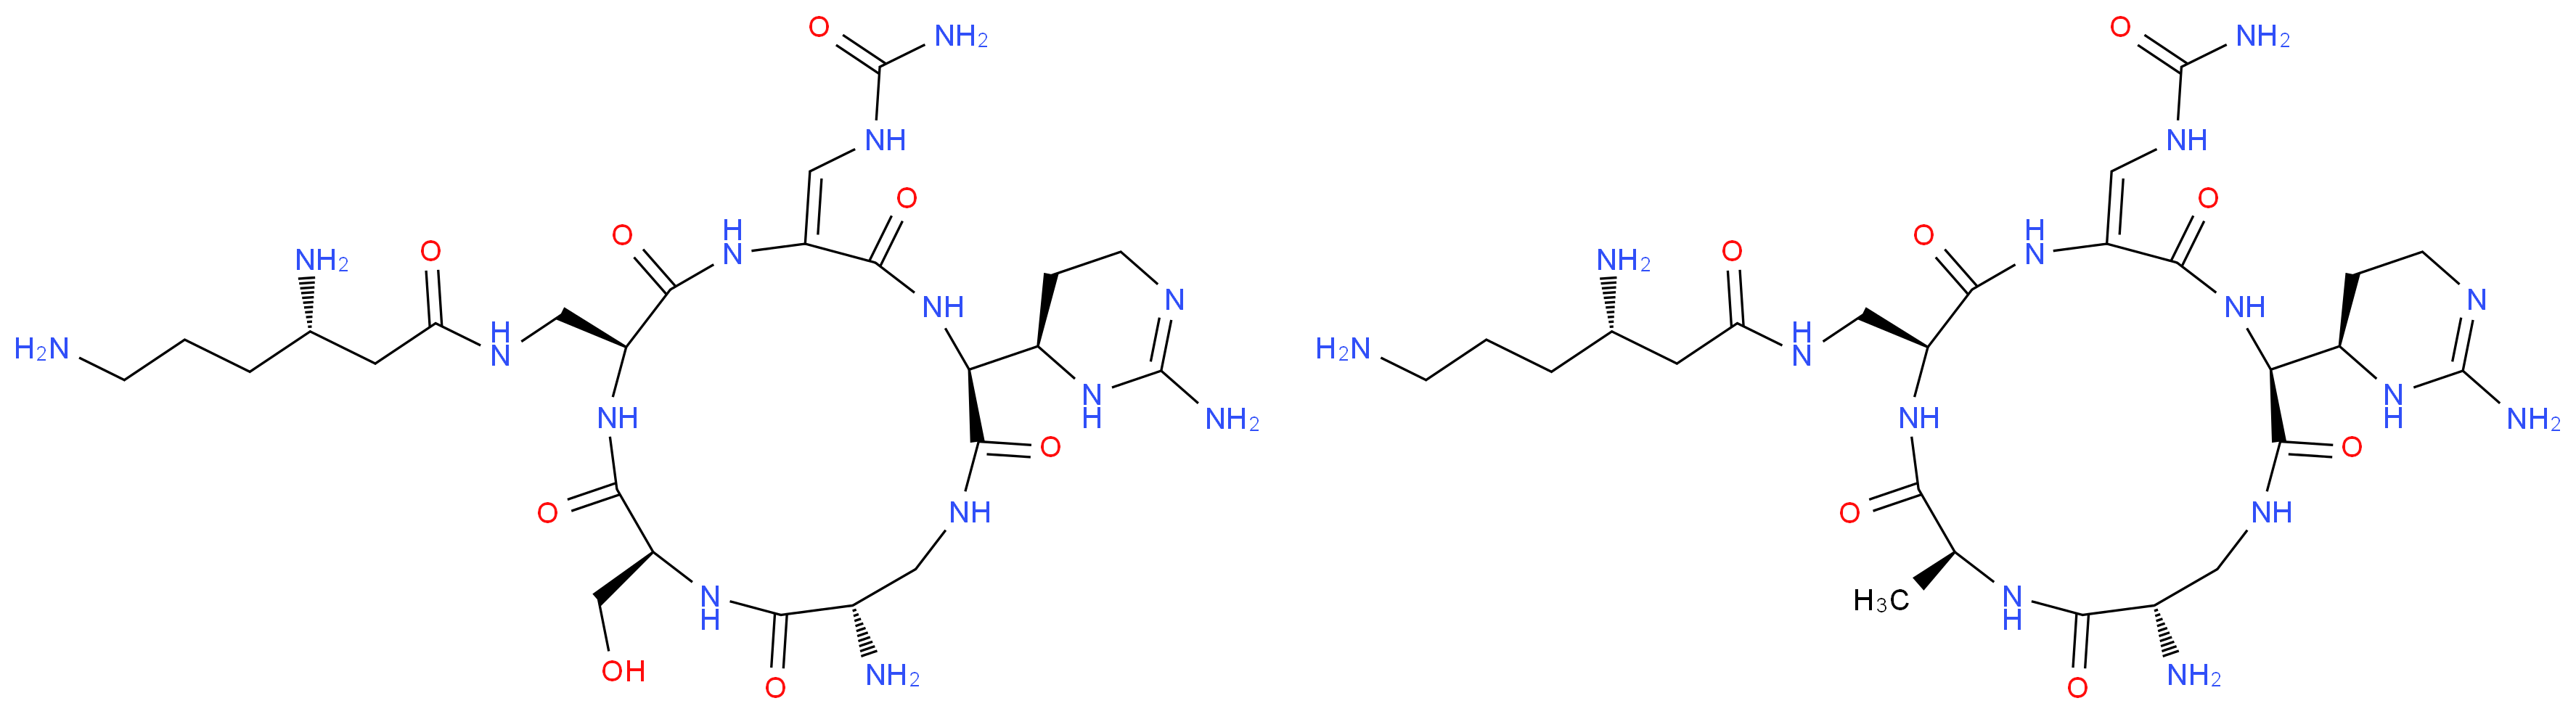 11003-38-6 molecular structure